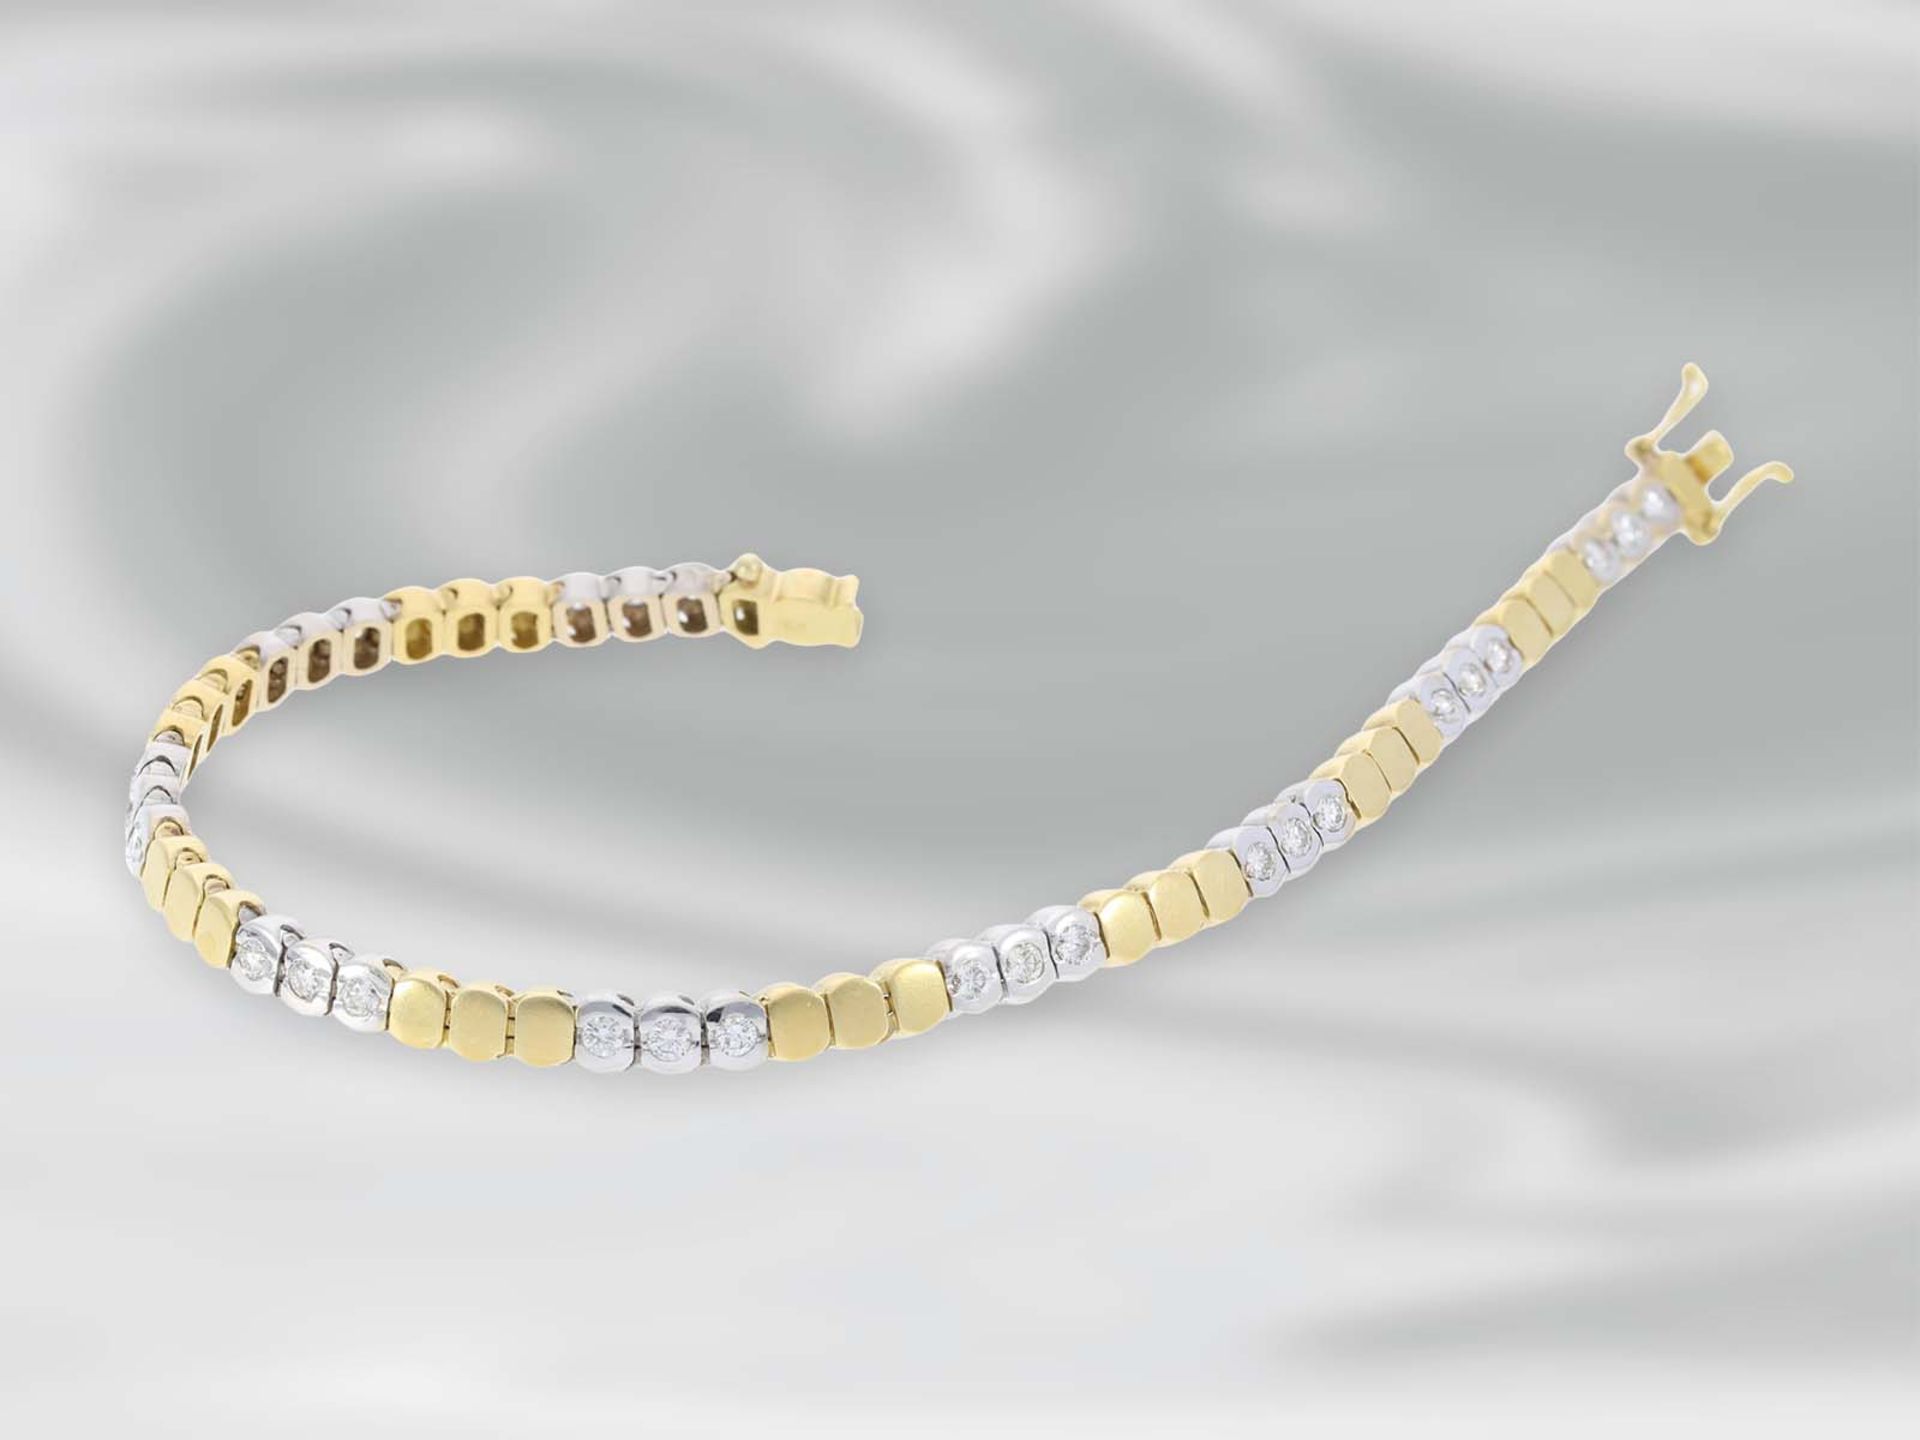 Armband: sehr attraktives Bicolor-Armband mit Brillanten, ca. 1ct, 18K Gelbgold/WeißgoldCa. 18cm - Bild 3 aus 3